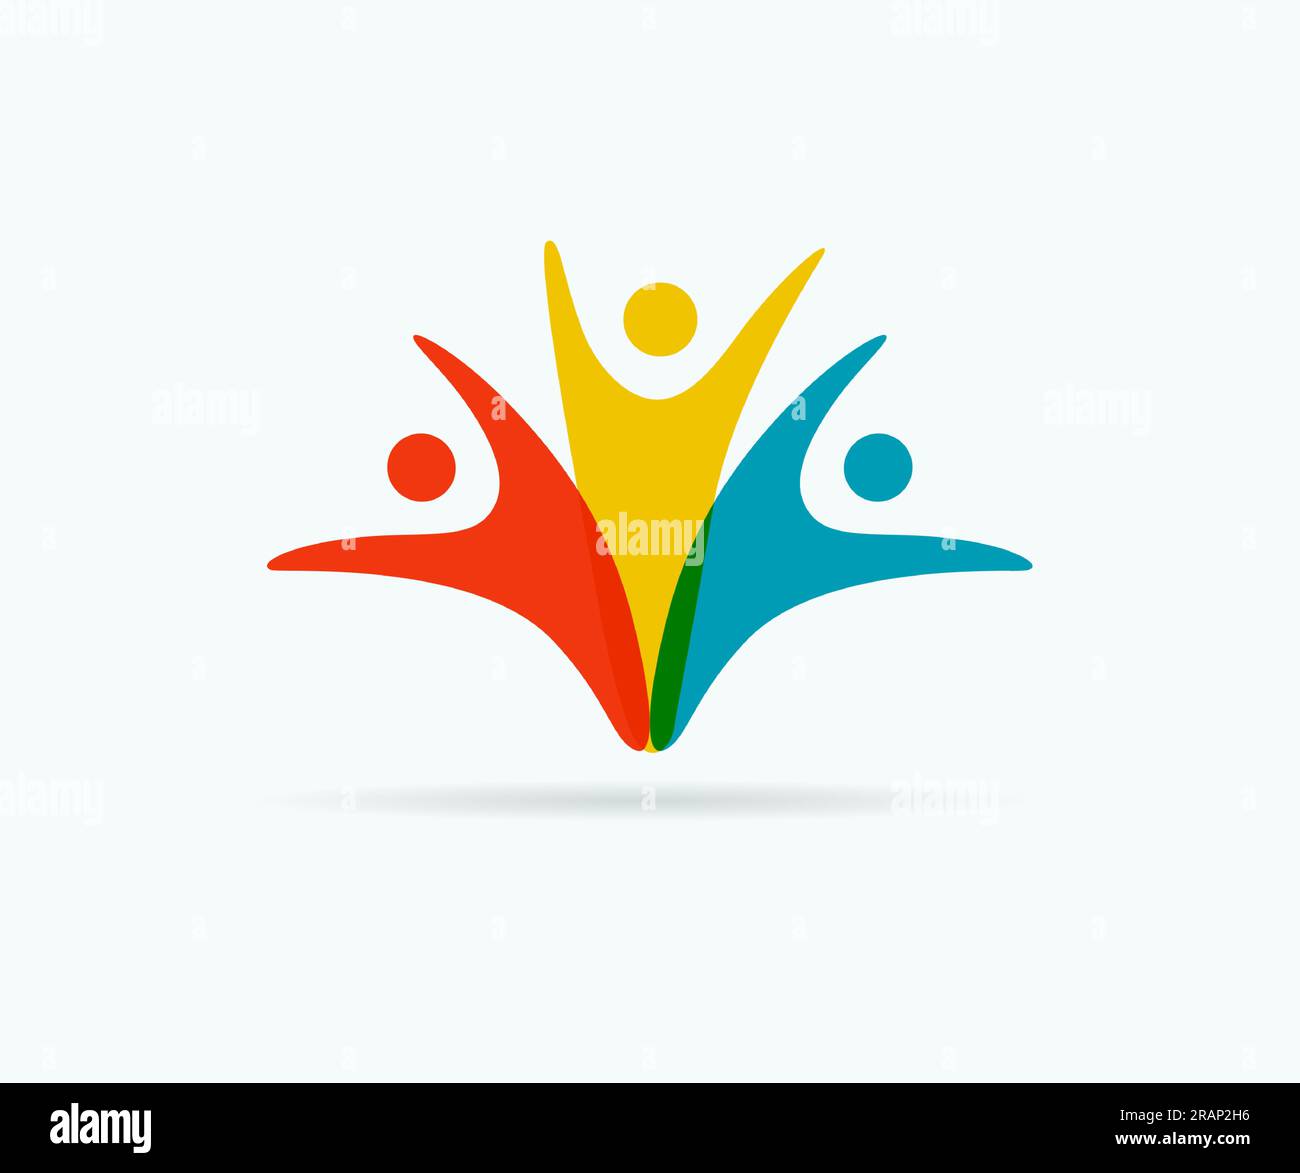 Abstraktes Teamwork farbenfrohes Logo für Menschen. Symboldesign mit minimalistischer Stylingzeichnung. Vector-Co-working-Emblem oder Familienzeichen Stock Vektor